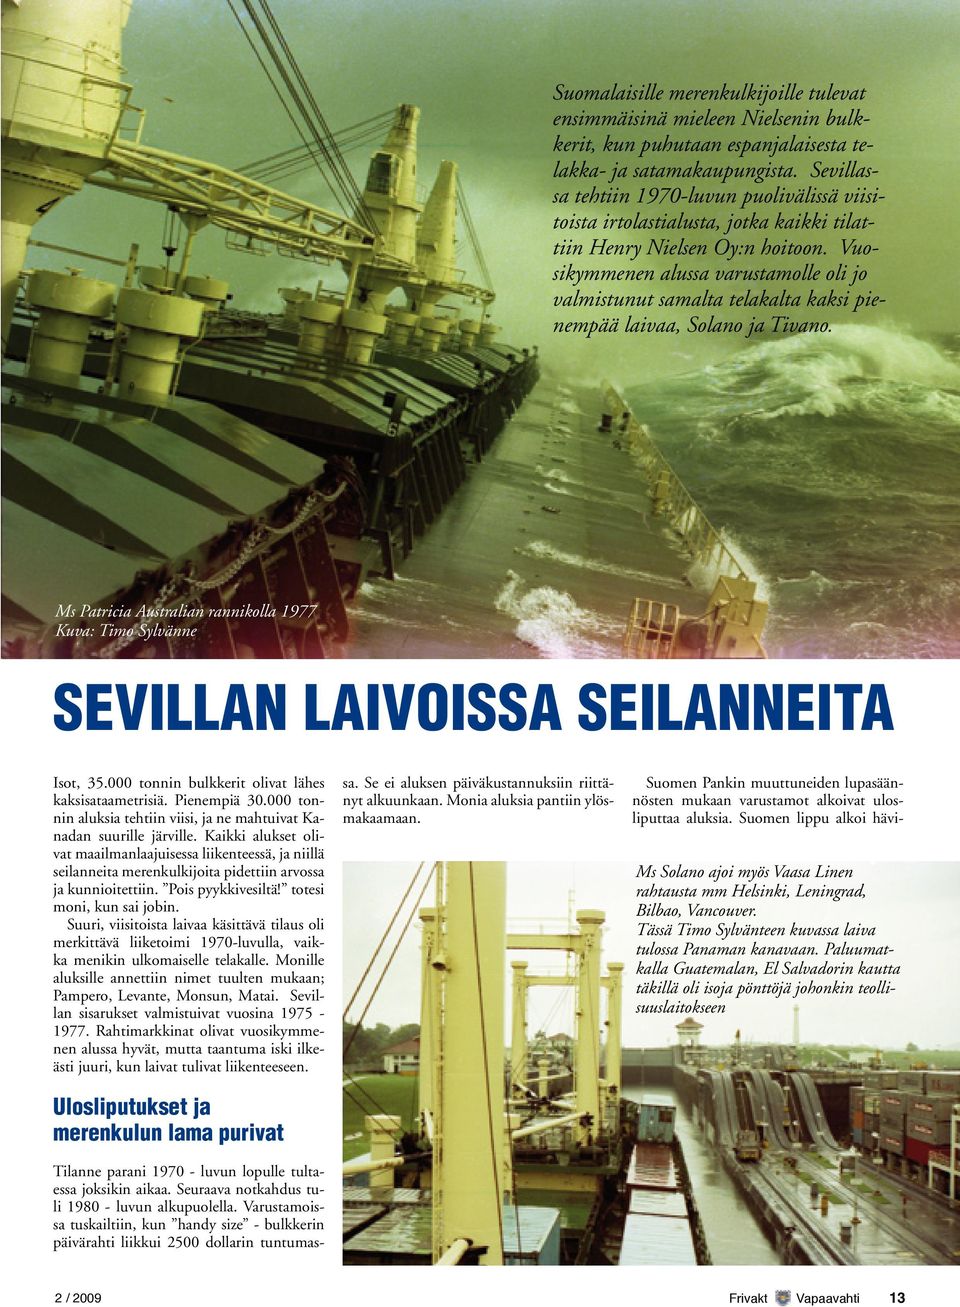 Vuosikymmenen alussa varustamolle oli jo valmistunut samalta telakalta kaksi pienempää laivaa, Solano ja Tivano.